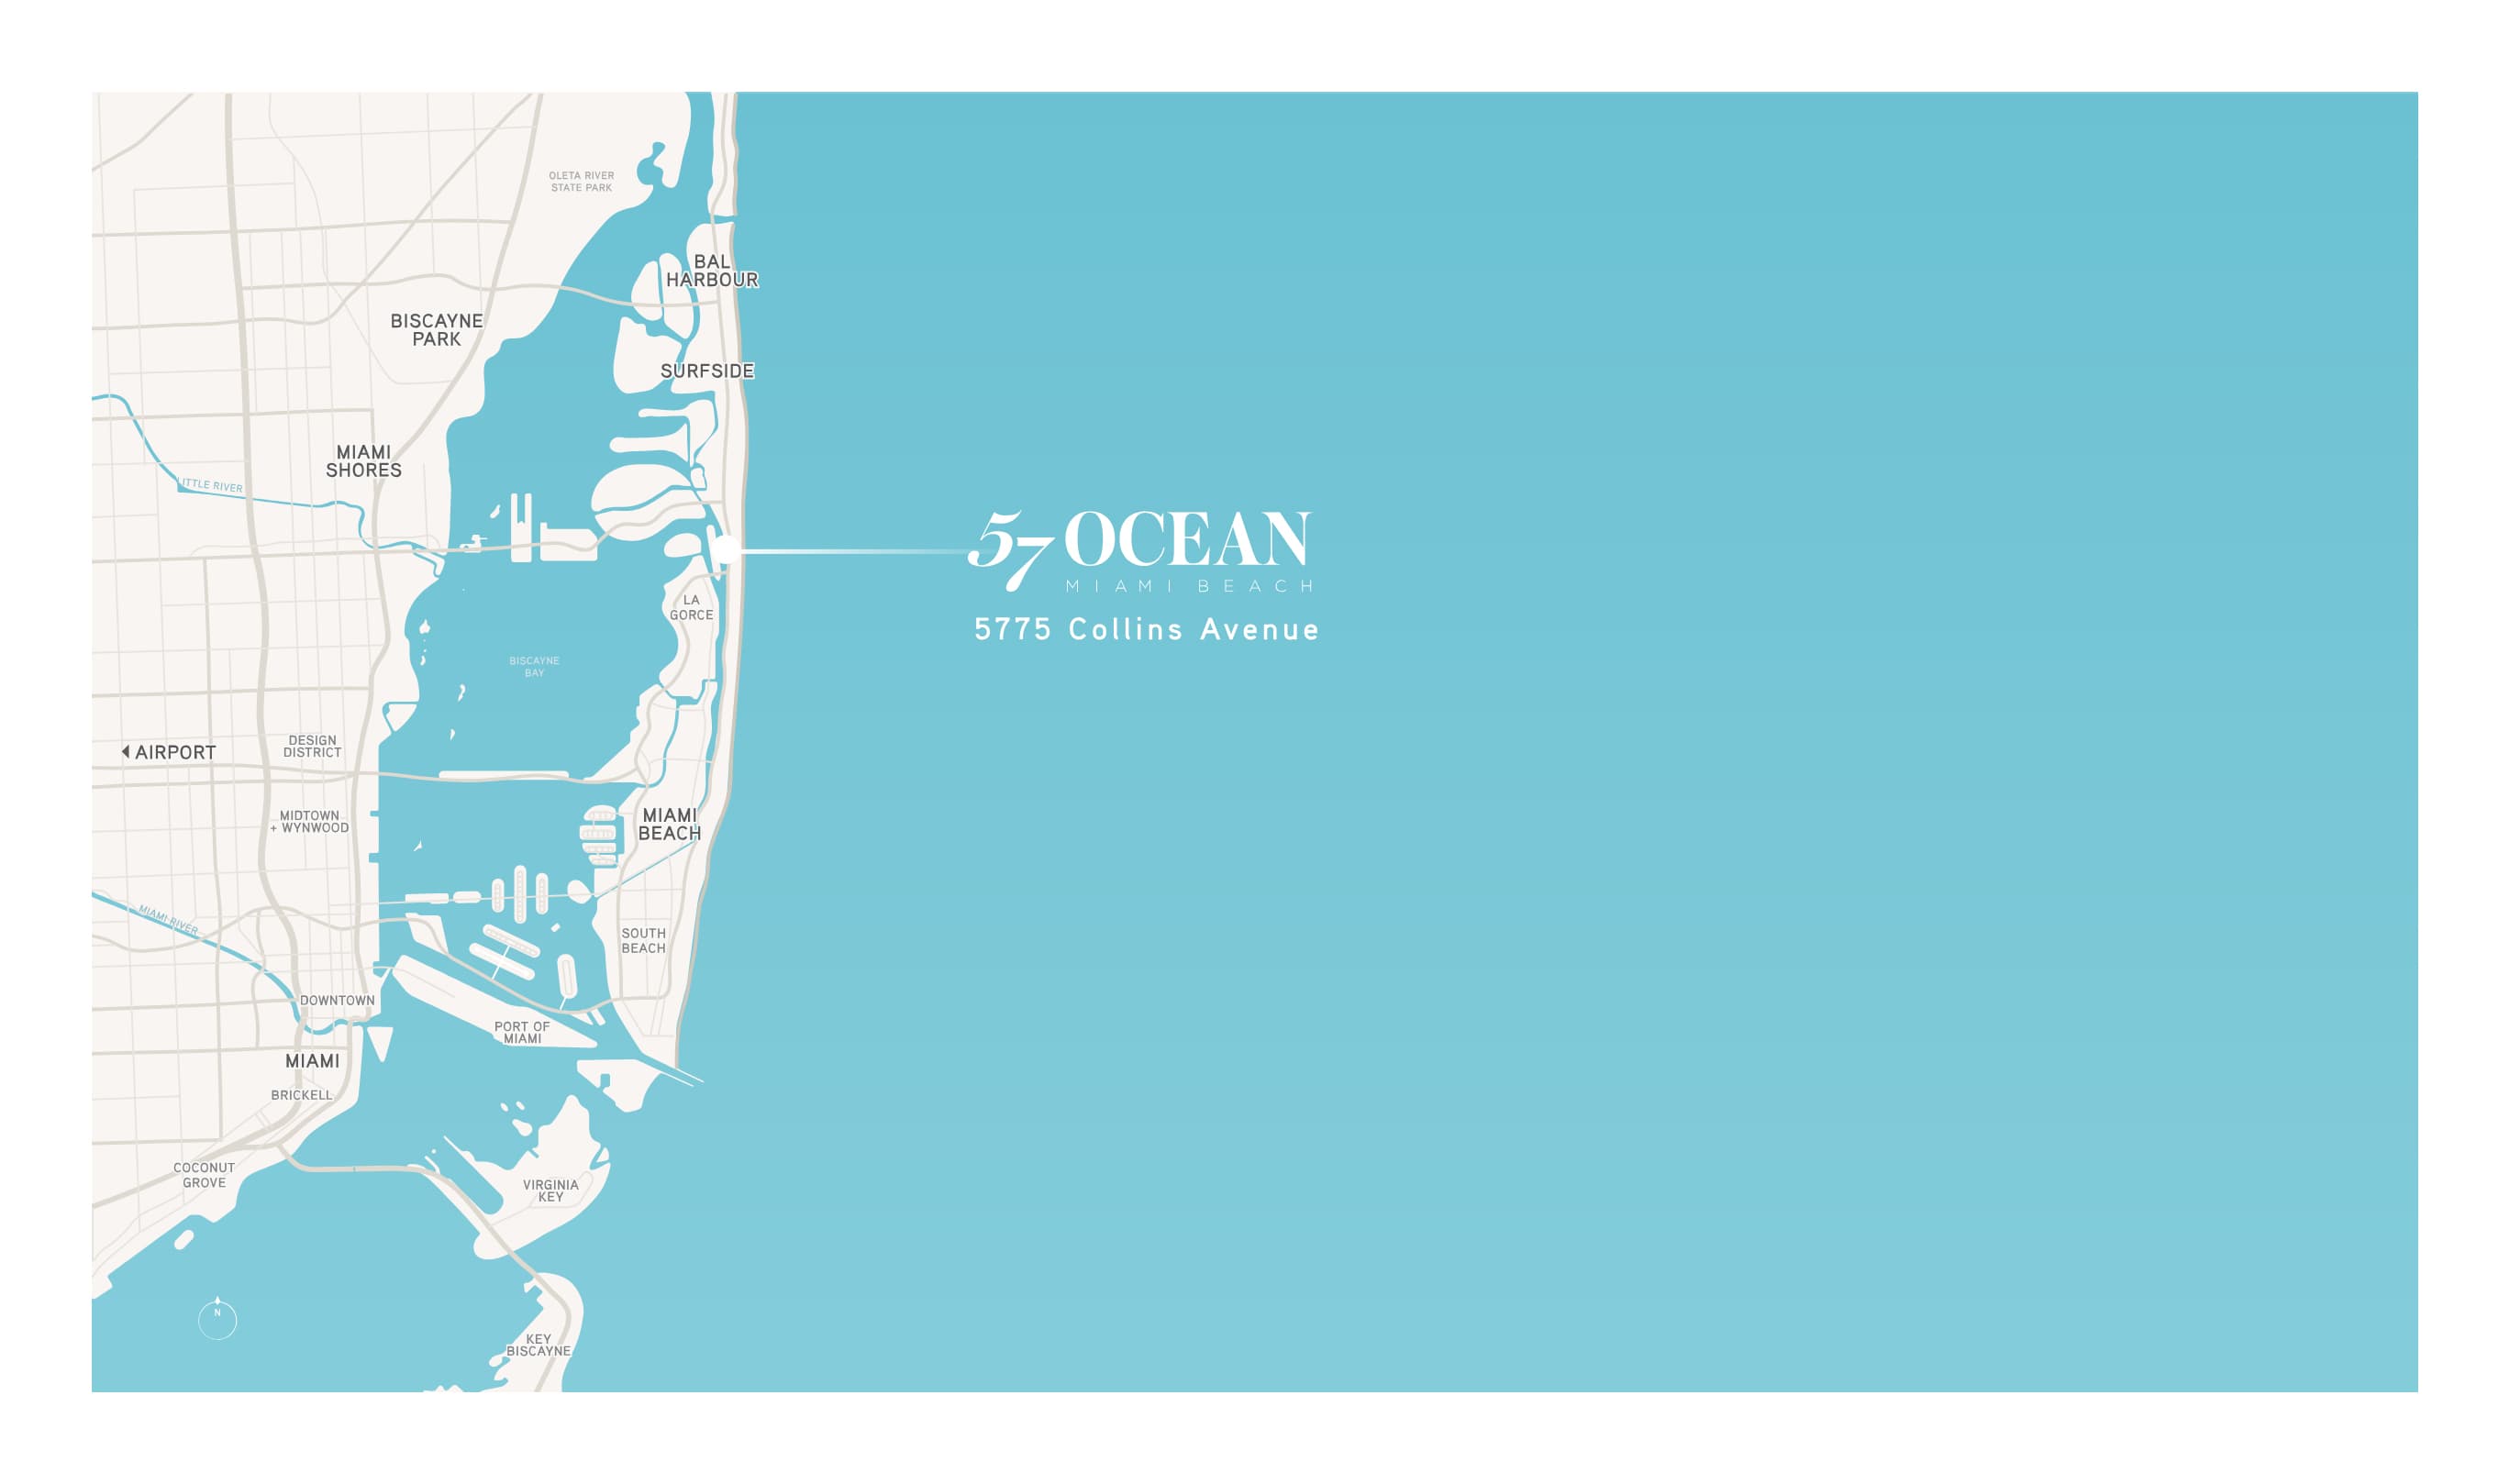 57 Ocean Miami Beach Map